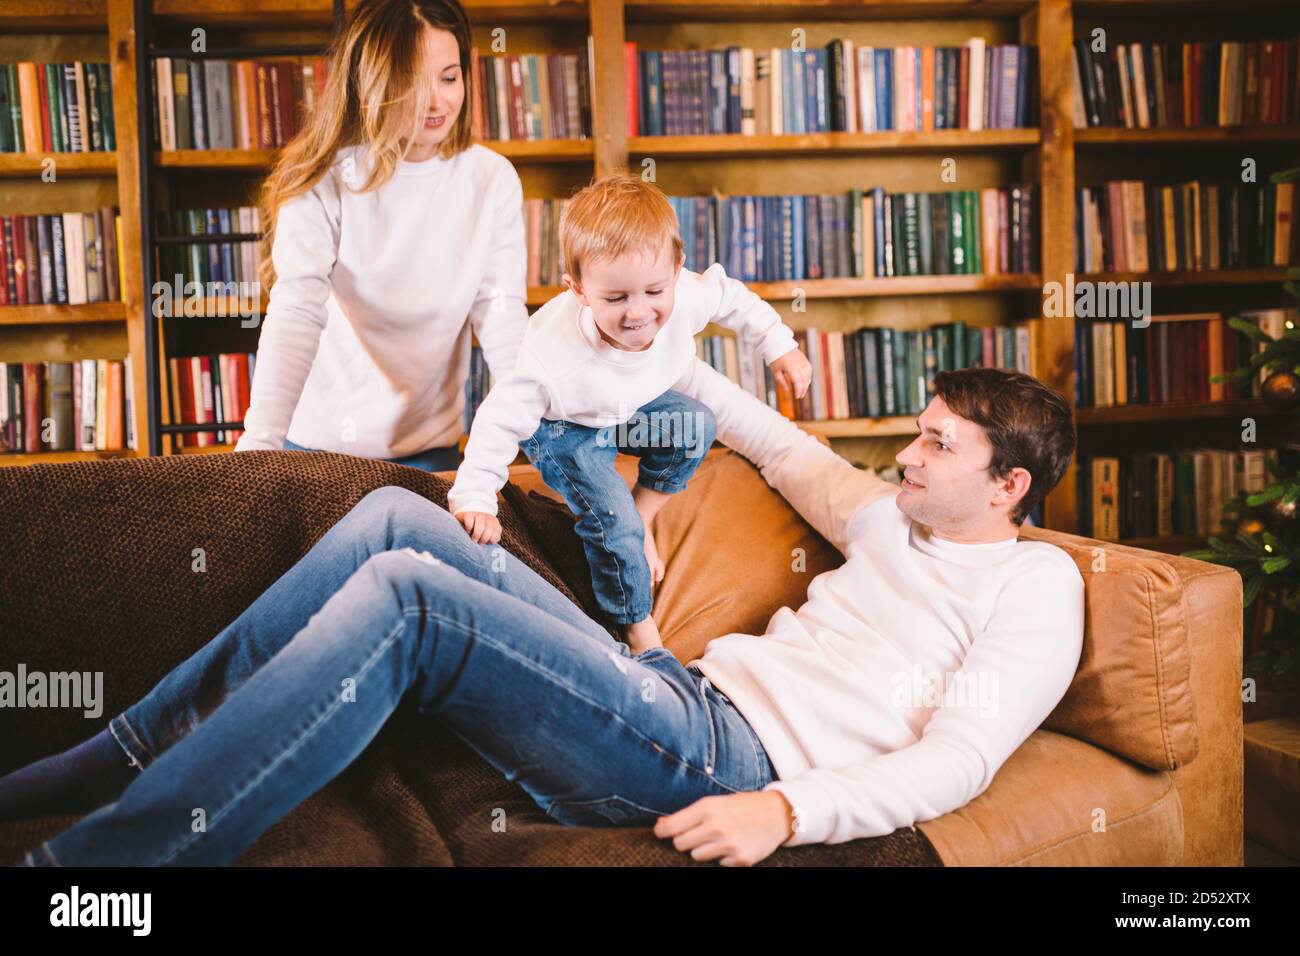 Familienportrait zu Weihnachten. Junge kaukasische Familie in identischer  Kleidung Spaß auf dem Sofa im Wohnzimmer mit großer Bibliothek von Büchern  und Weihnachten Stockfotografie - Alamy